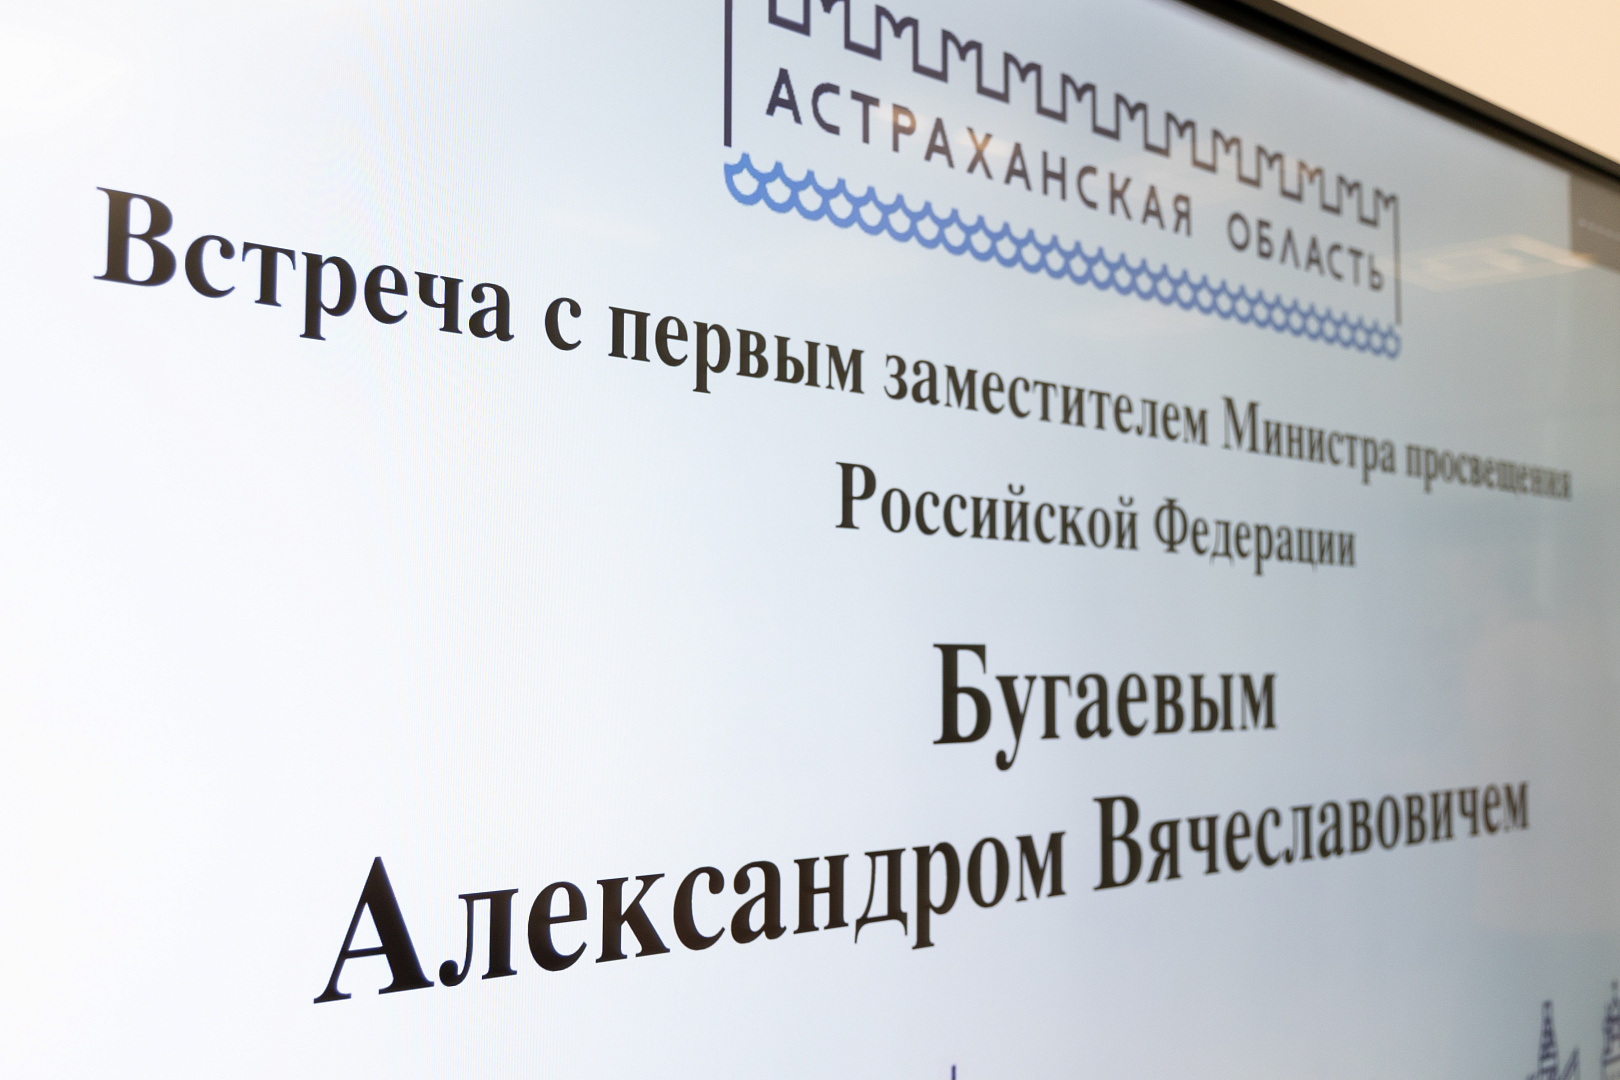 Министр Просвещения России посетил ПМКК. Сайт университет просвещения рф